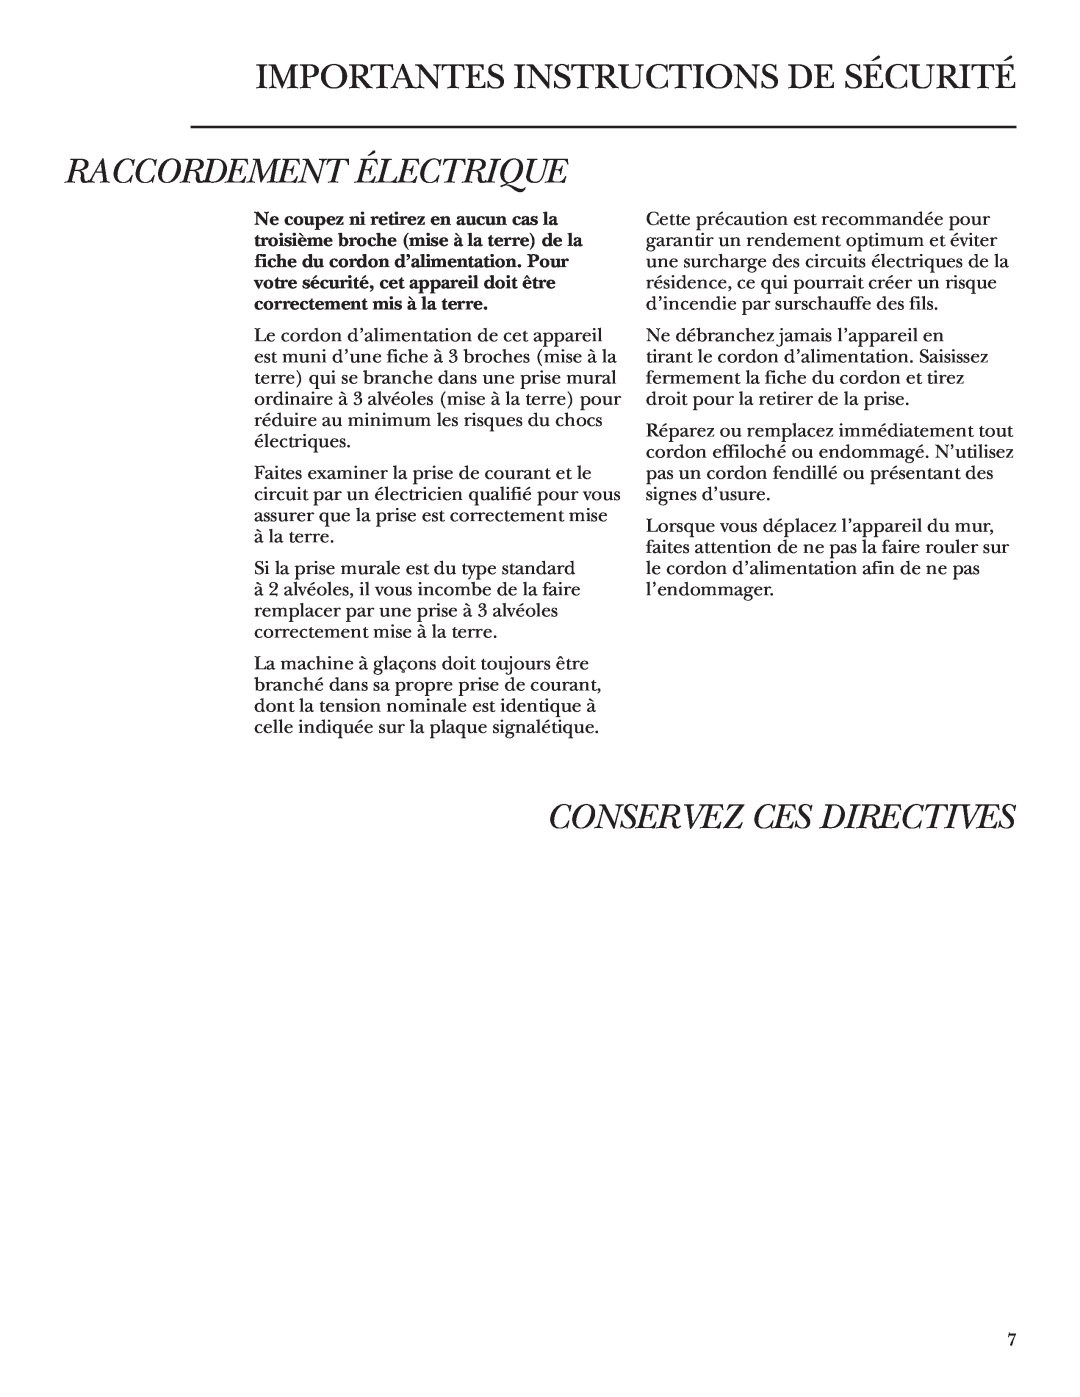 GE Monogram ZDWT240 owner manual Raccordement Électrique, Conservez Ces Directives, Importantes Instructions De Sécurité 